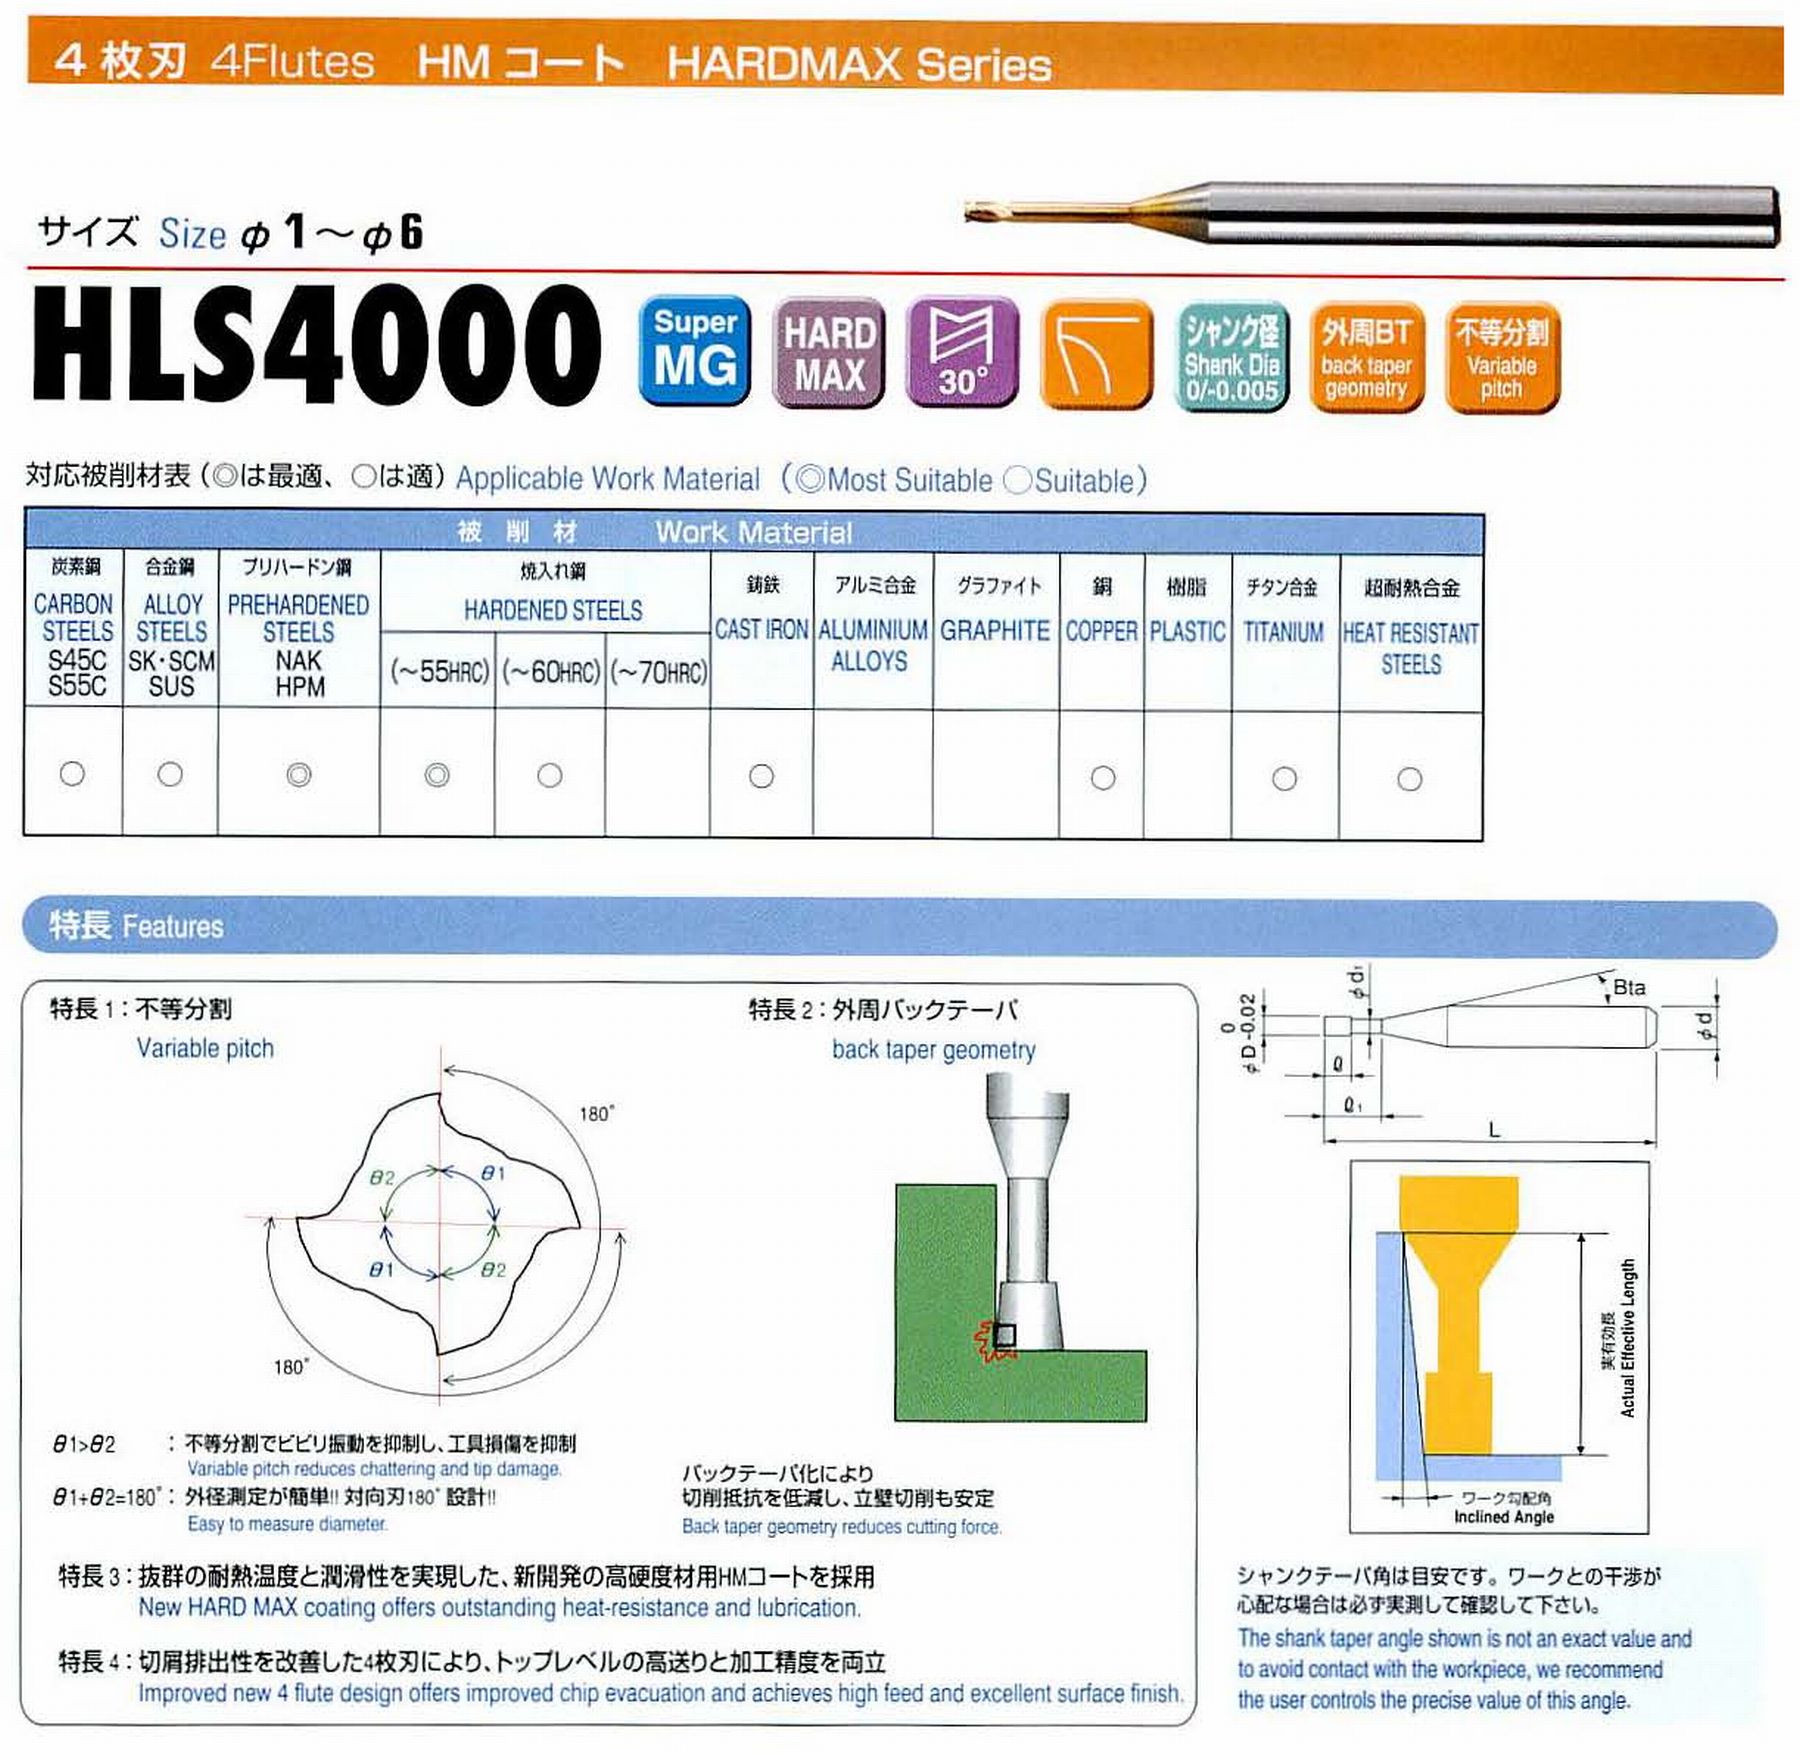 ユニオンツール 4枚刃 HLS4060-200 外径6 有効長20 刃長6 首径5.82 シャンクテーパ角- 全長80 シャンク径6